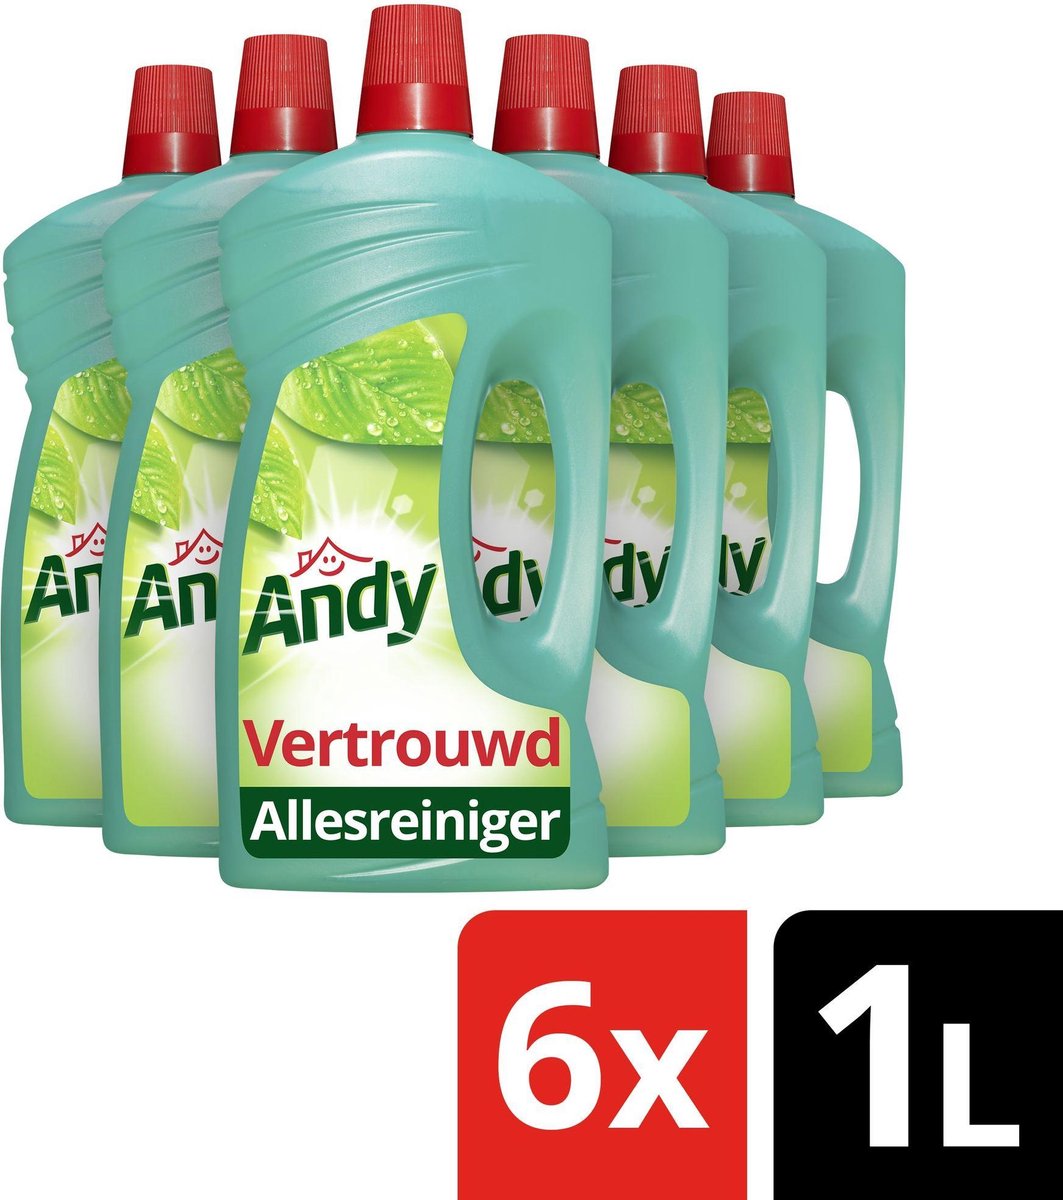 Andy Vertrouwd Allesreiniger - 6 x 1 liter - Voordeelverpakking